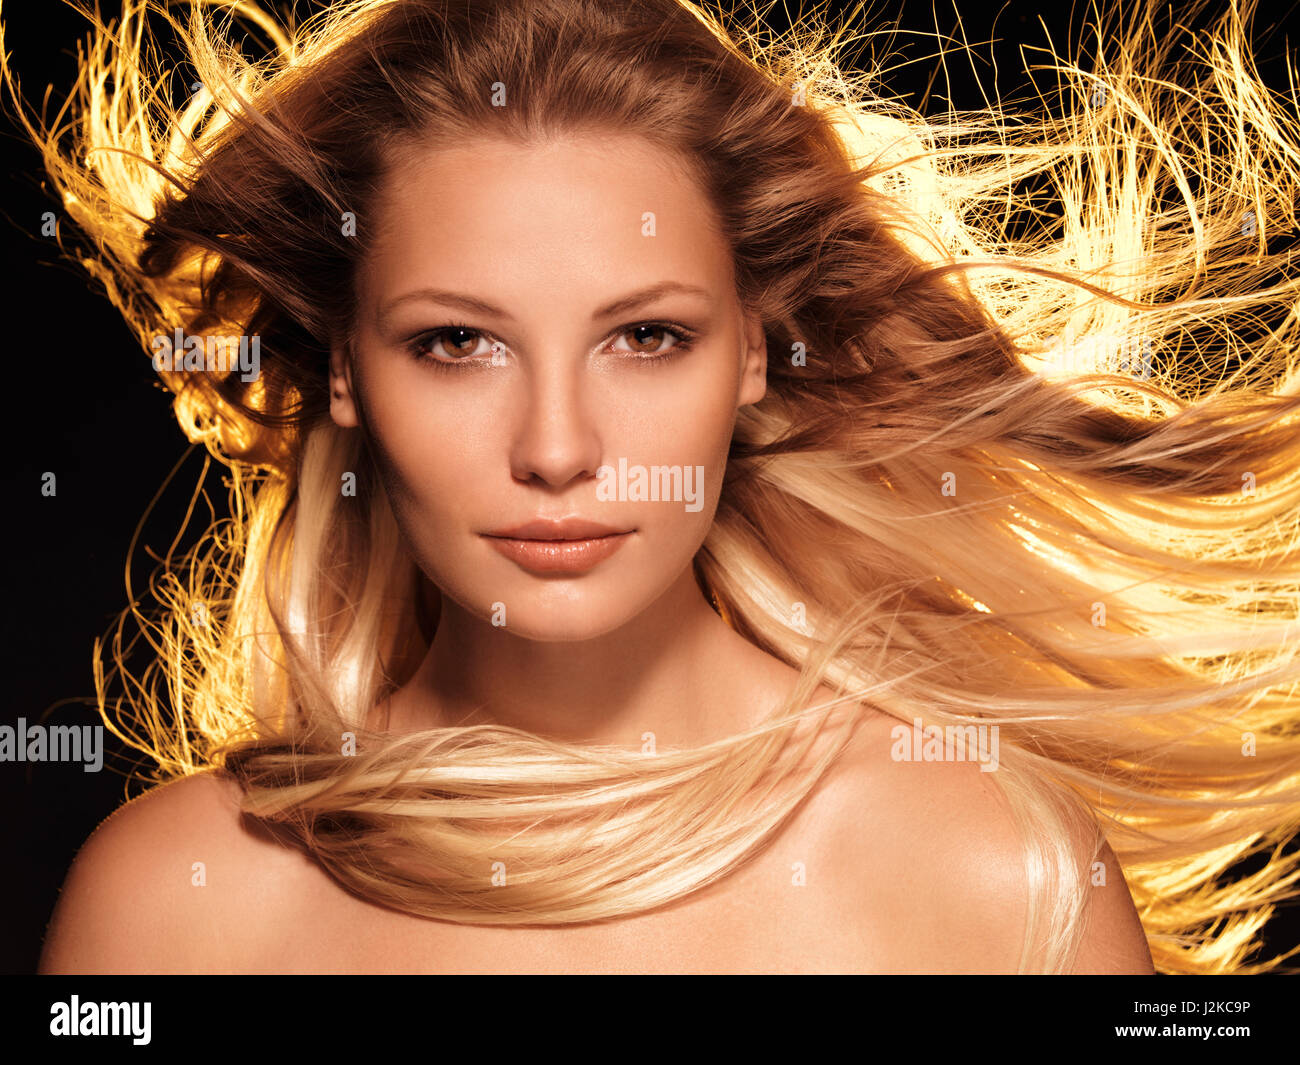 Führerschein und Fingerabdrücke auf MaximImages.com - Schönheitsfoto einer Frau mit lang leuchtendem, goldblondem Haar, Vorderansicht Stockfoto